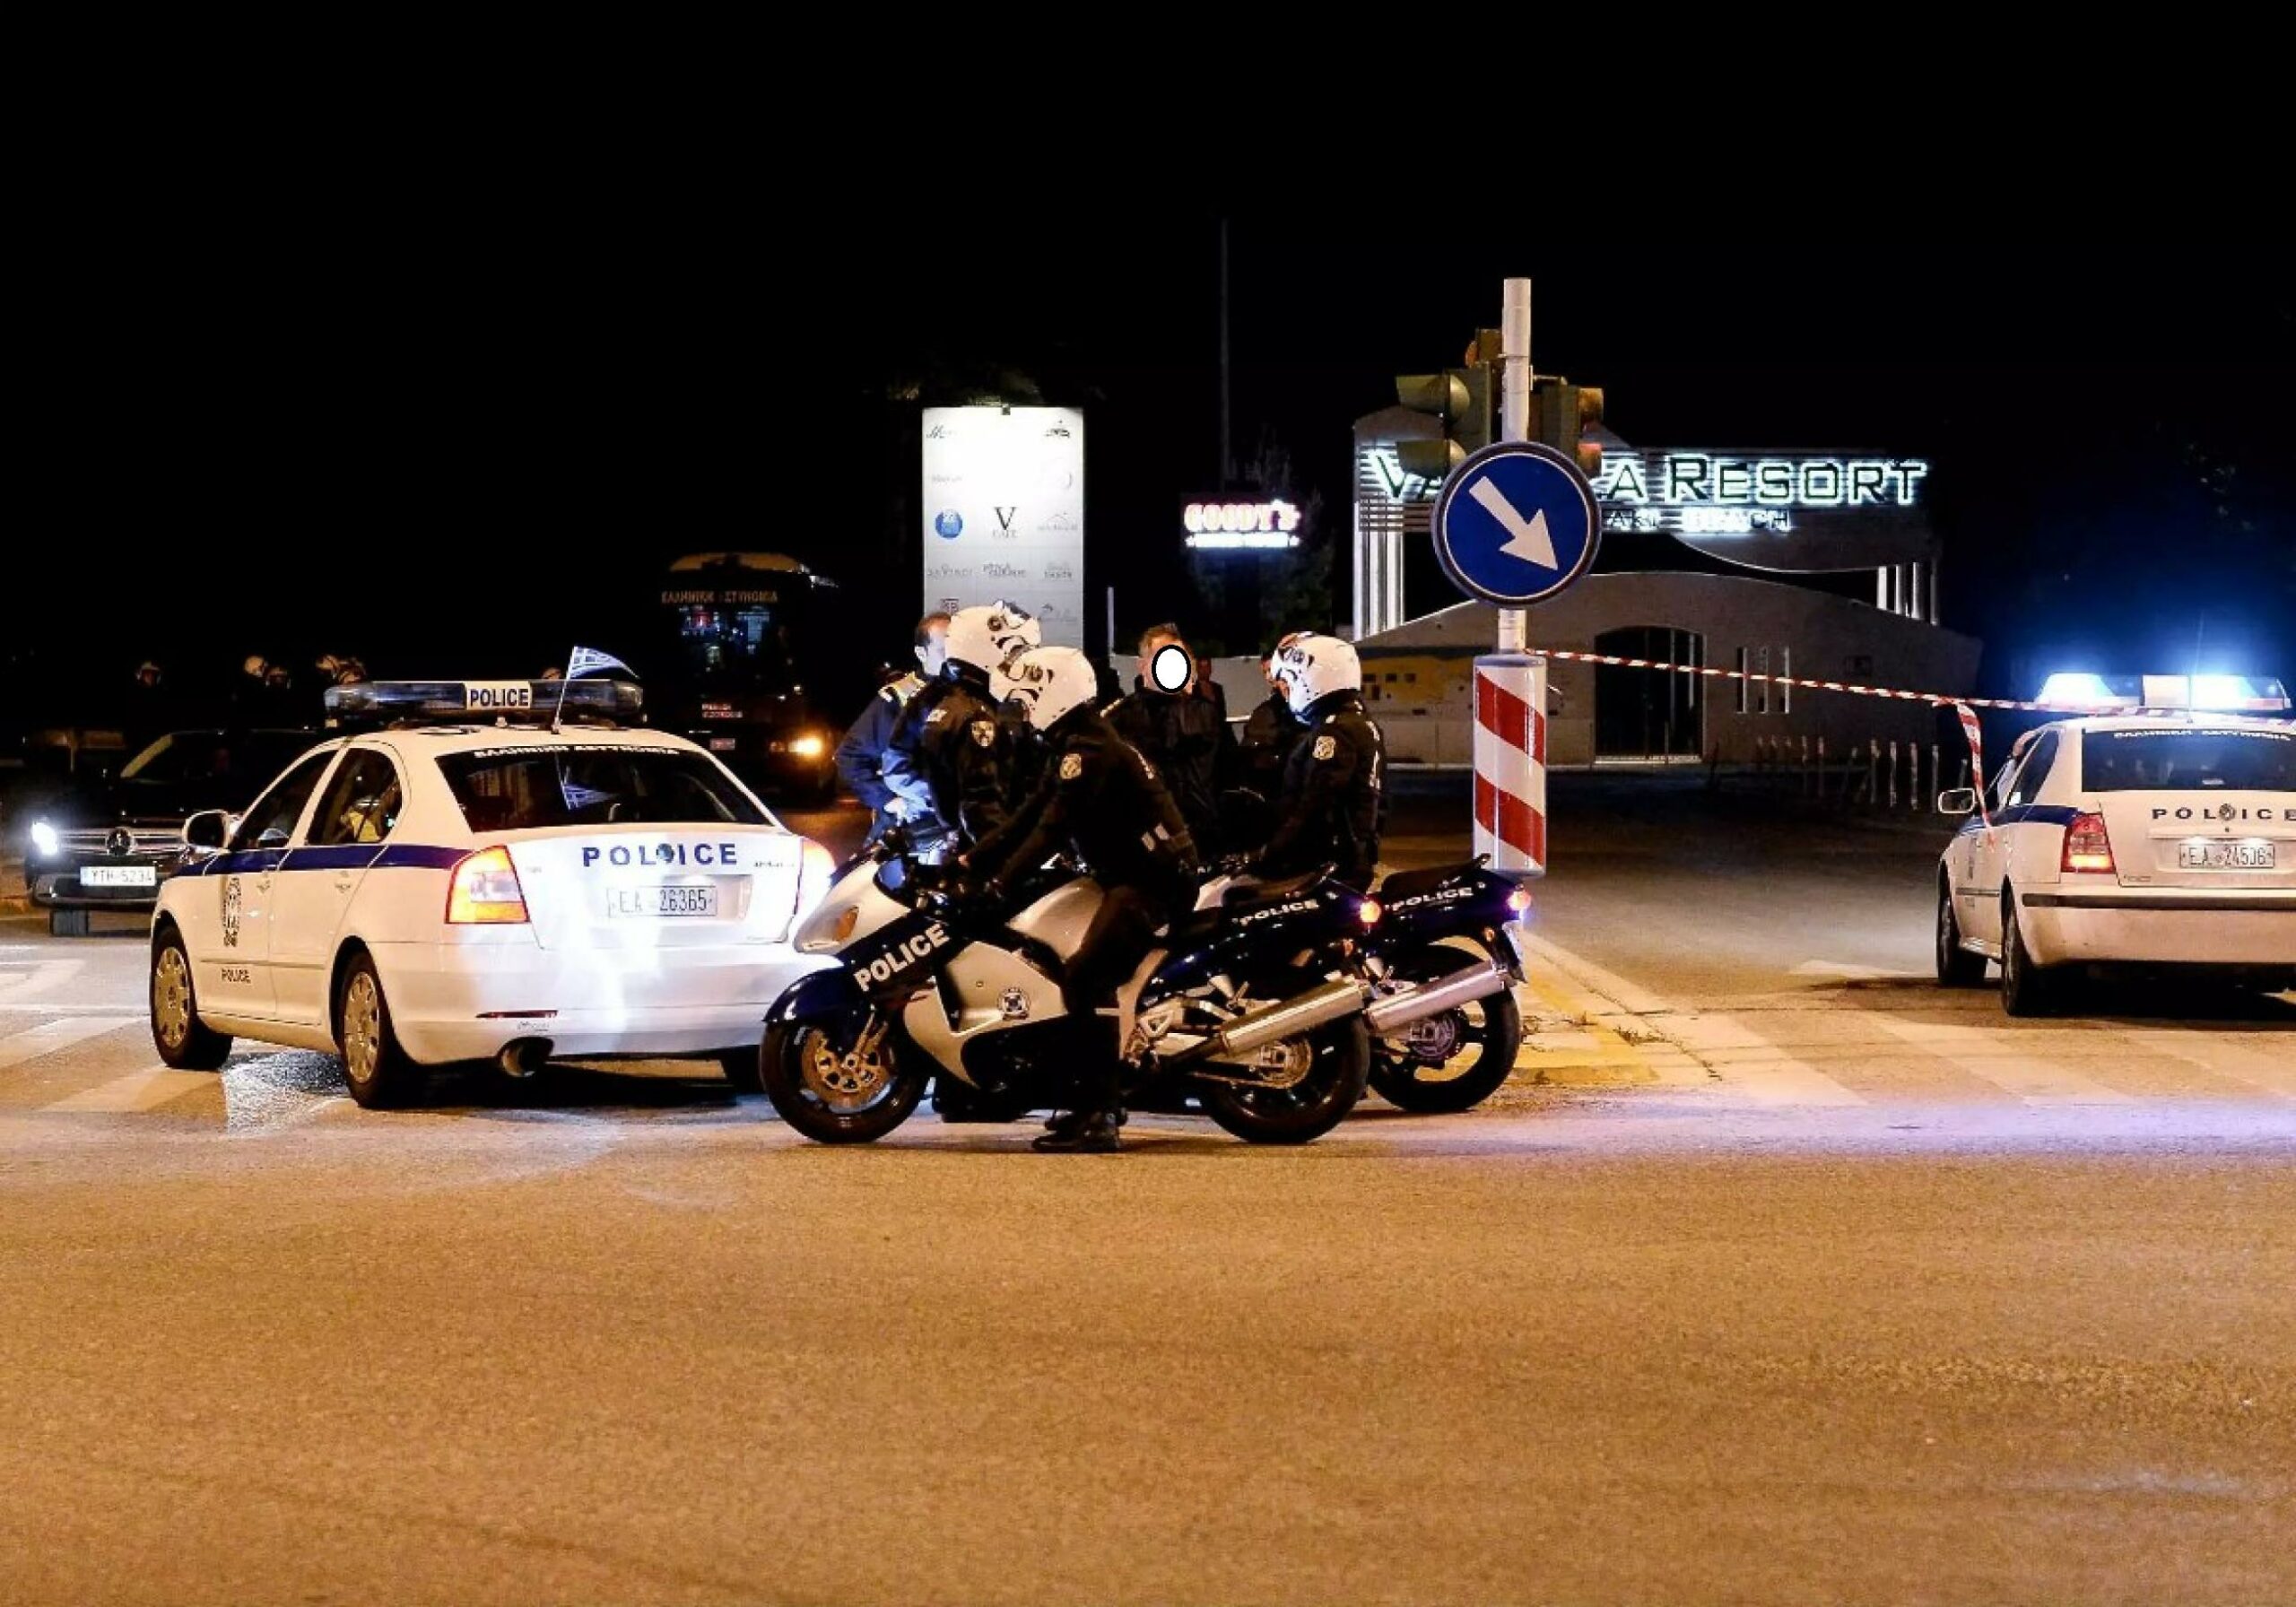 Νέες κόντρες στο Riba's: Ισχυρές αστυνομικές δυνάμεις στο σημείο, έγιναν προσαγωγές και συλλήψεις -Δείτε βίντεο